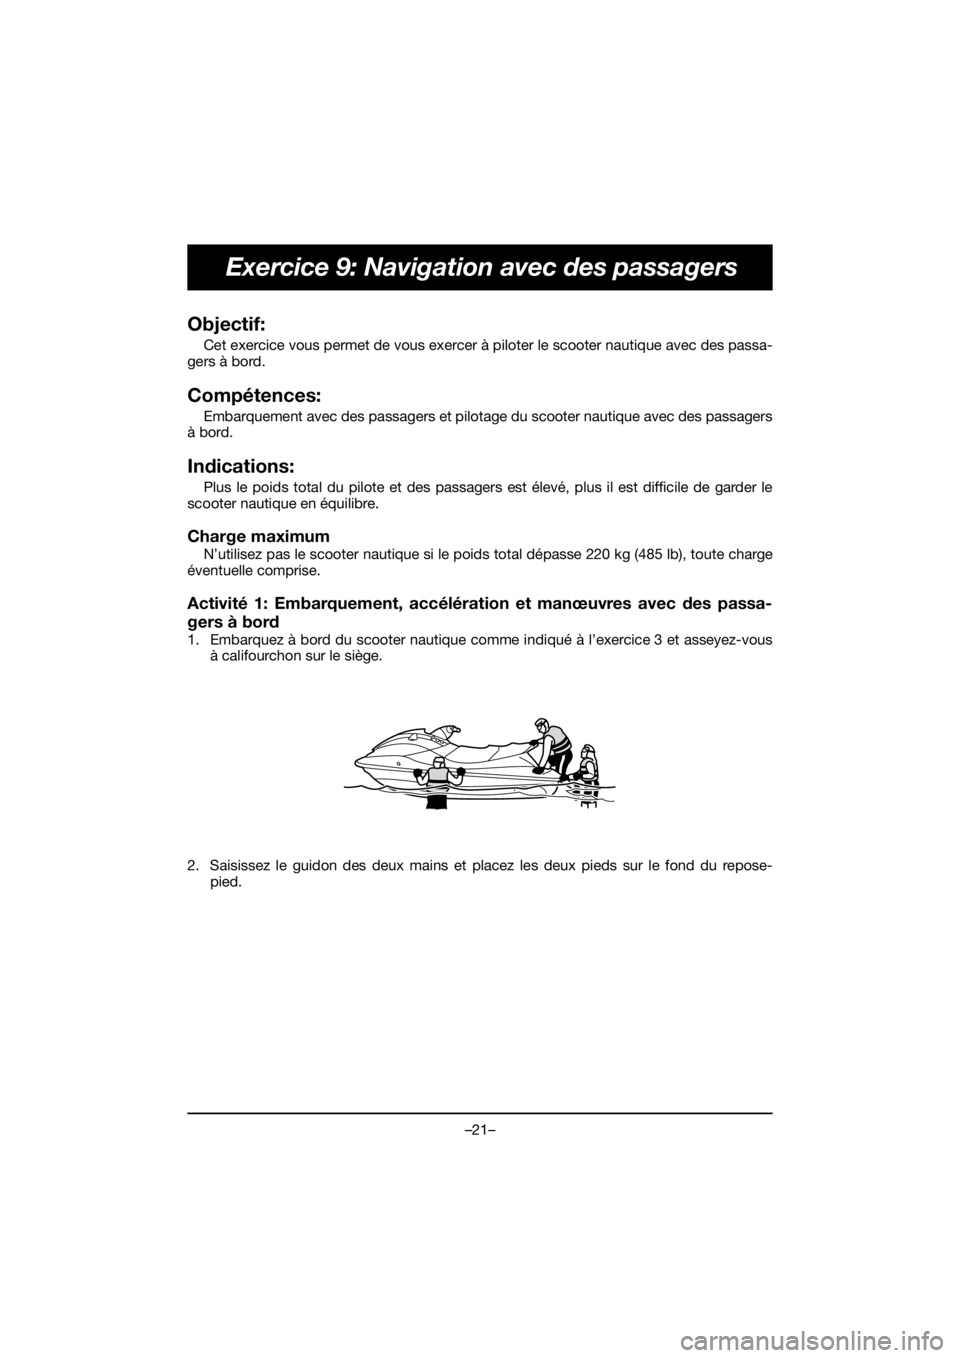 YAMAHA EX SPORT 2019  Manual de utilização (in Portuguese) –21–
Exercice 9: Navigation avec des passagers
Objectif: 
Cet exercice vous permet de vous exercer à piloter le scooter nautique avec des passa-
gers à bord.
Compétences: 
Embarquement avec des